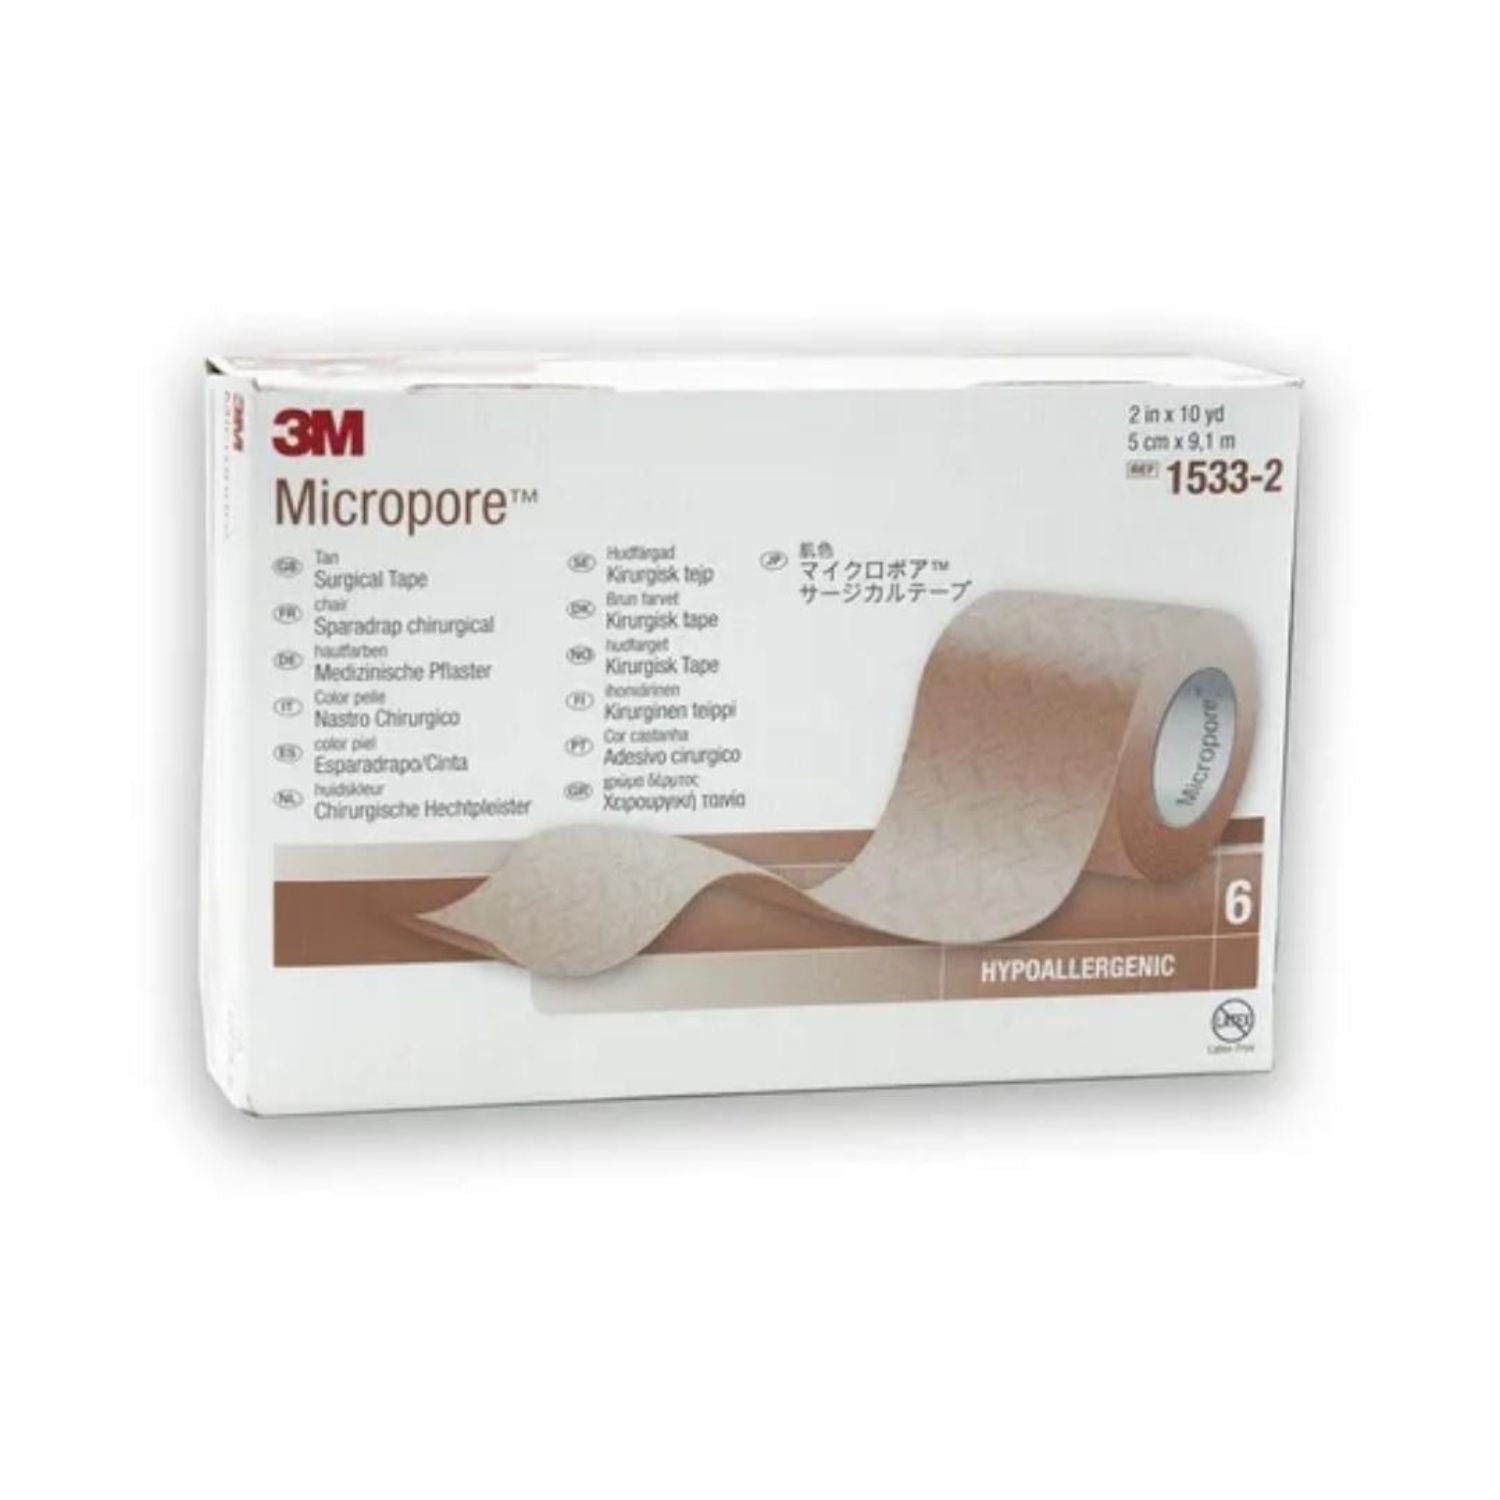 Micropore 3M (Sin Dispensador) 5 Cm X 9,1 M Piel 1533-2 x 6 unidades